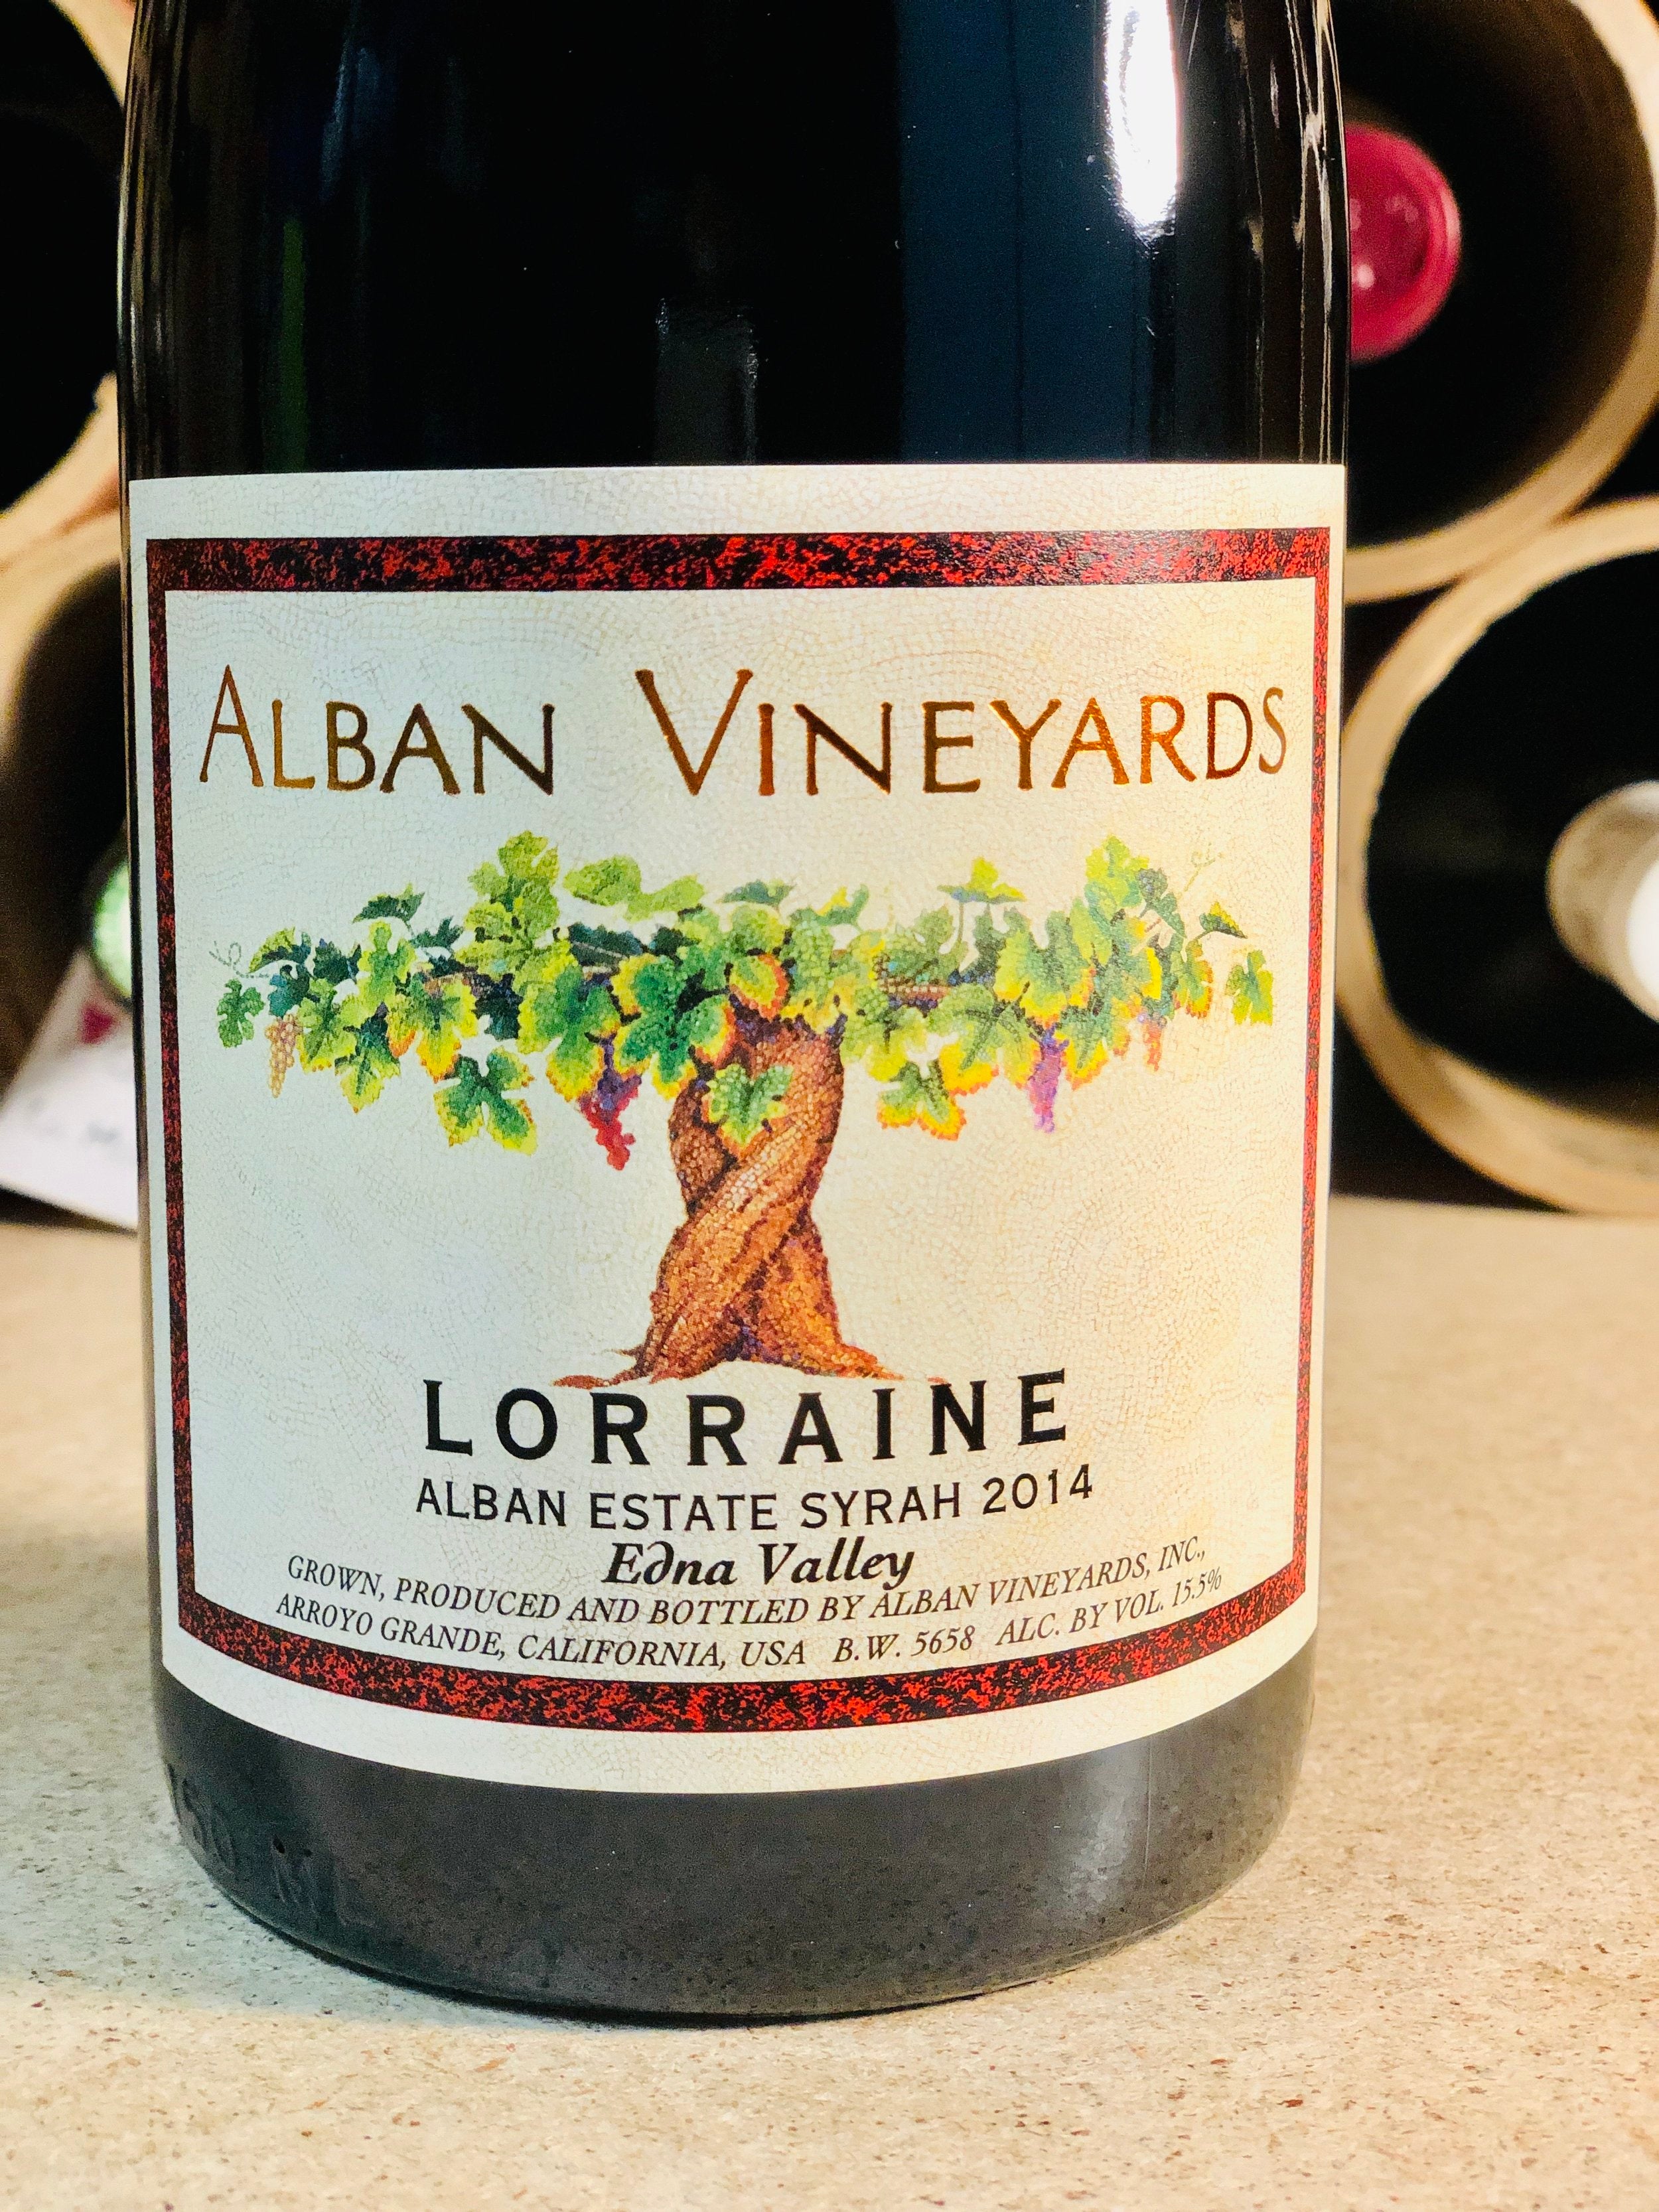 Alban Vineyards, Edna Valley, Lorraine Syrah 2014